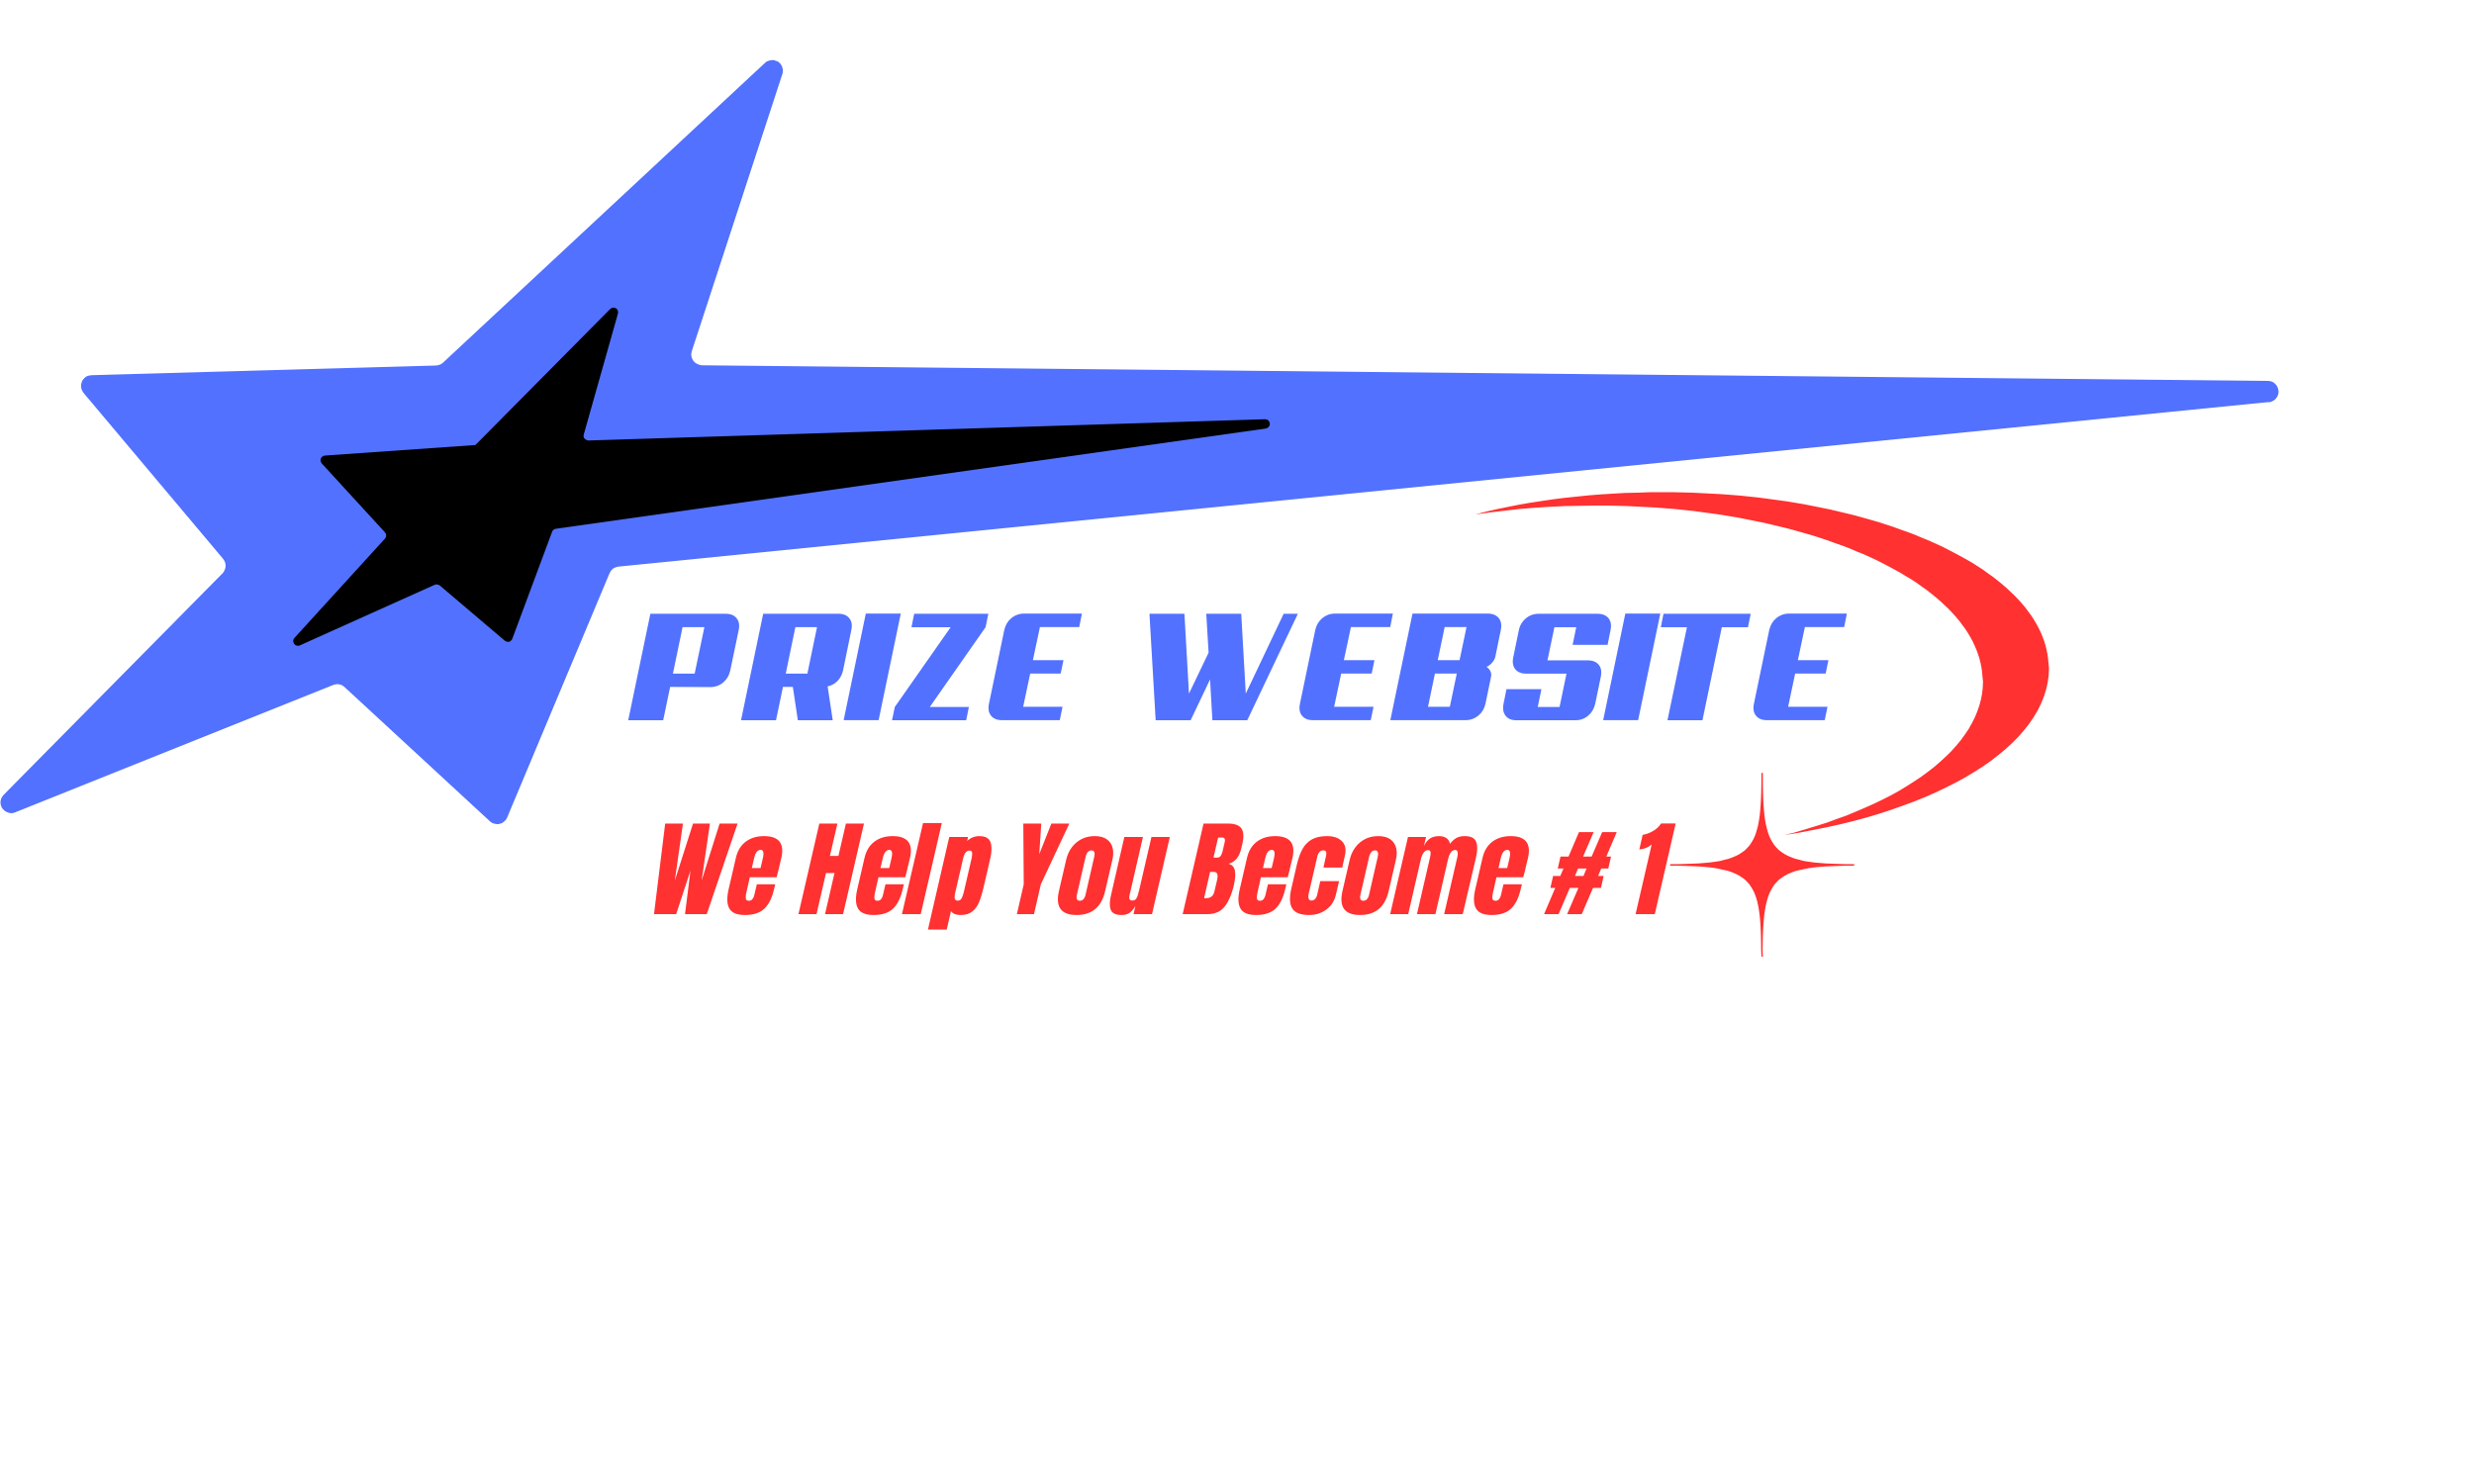 Prize Website